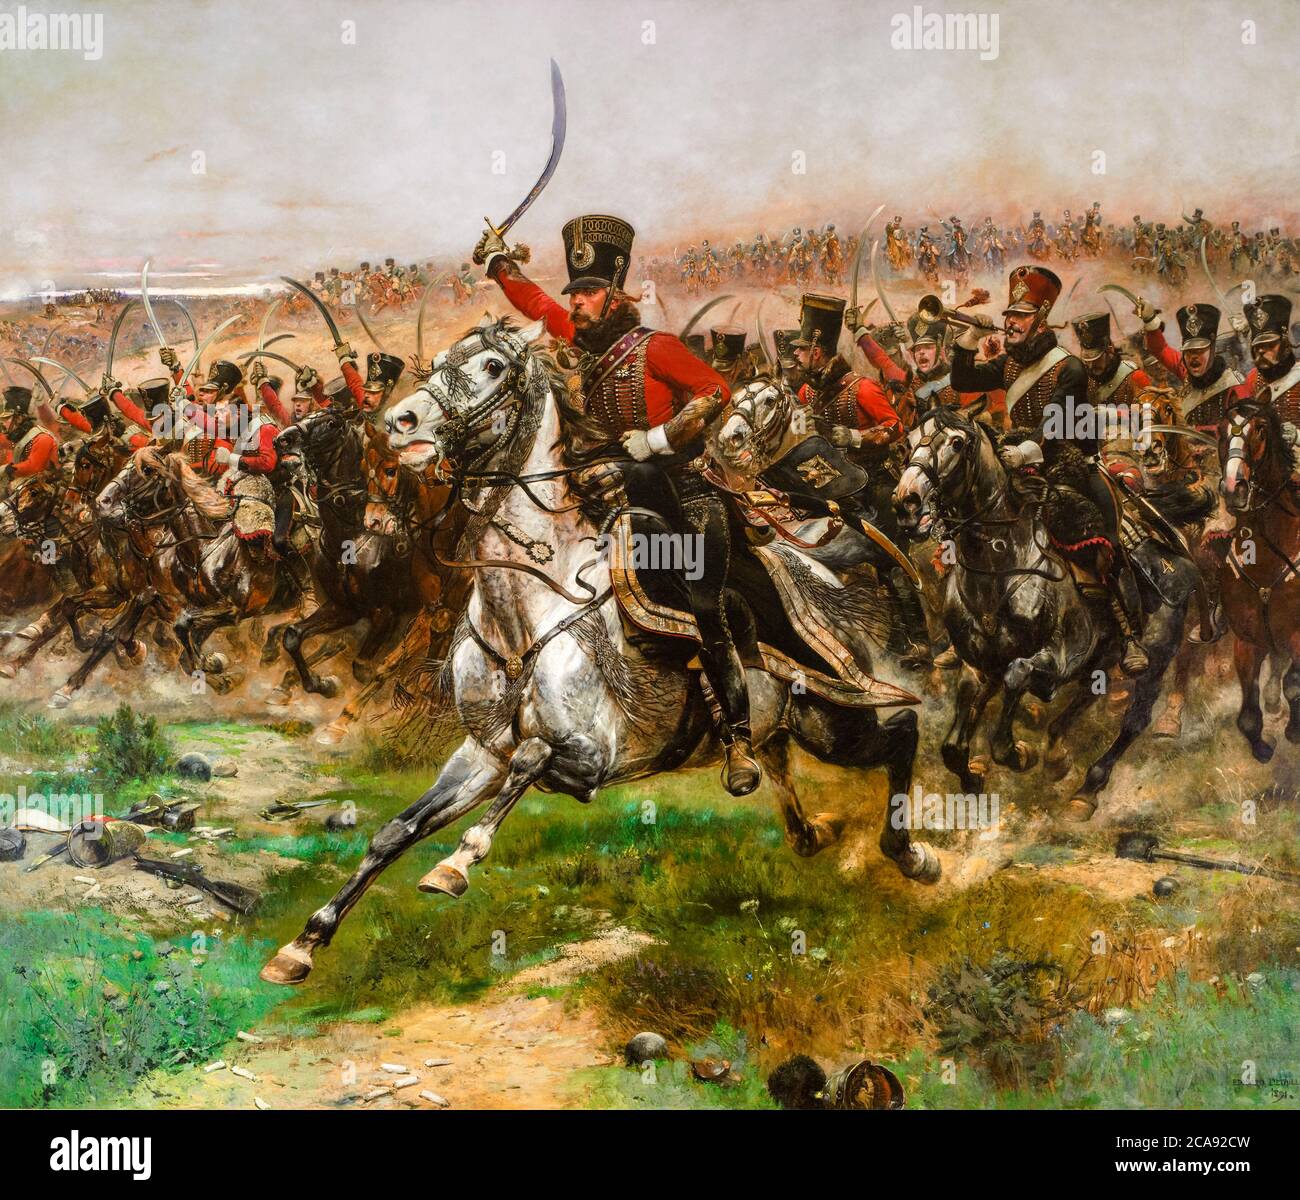 Vive l'Empereur, (4th Hussar de cavalerie à la bataille de Friedland, 14 juin 1807), peinture de Jean-Baptiste Édouard Detaille, 1891 Banque D'Images